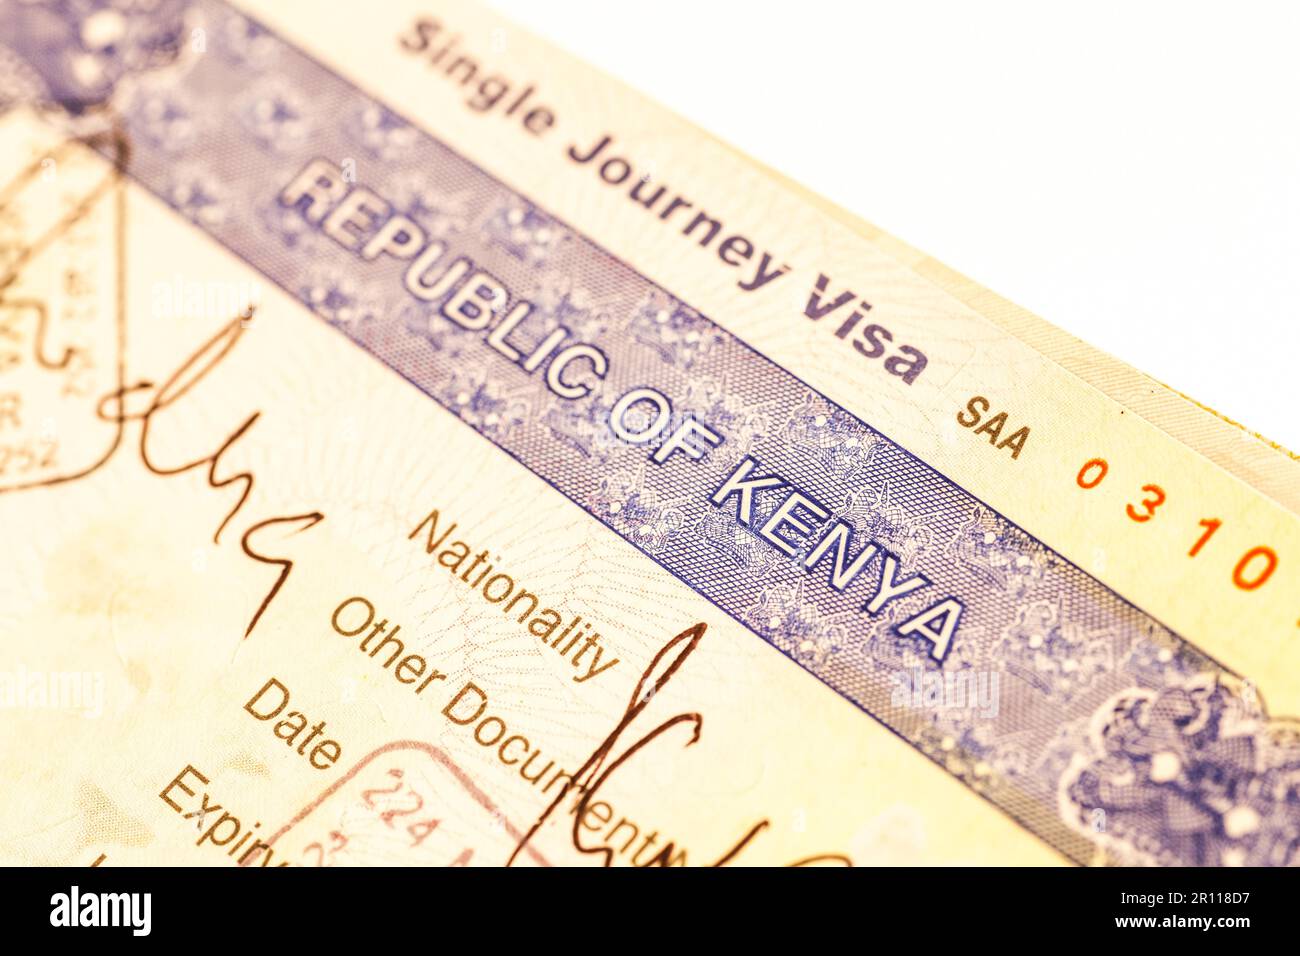 Détail du Kenya visa demandé sur le passeport Photo Stock - Alamy